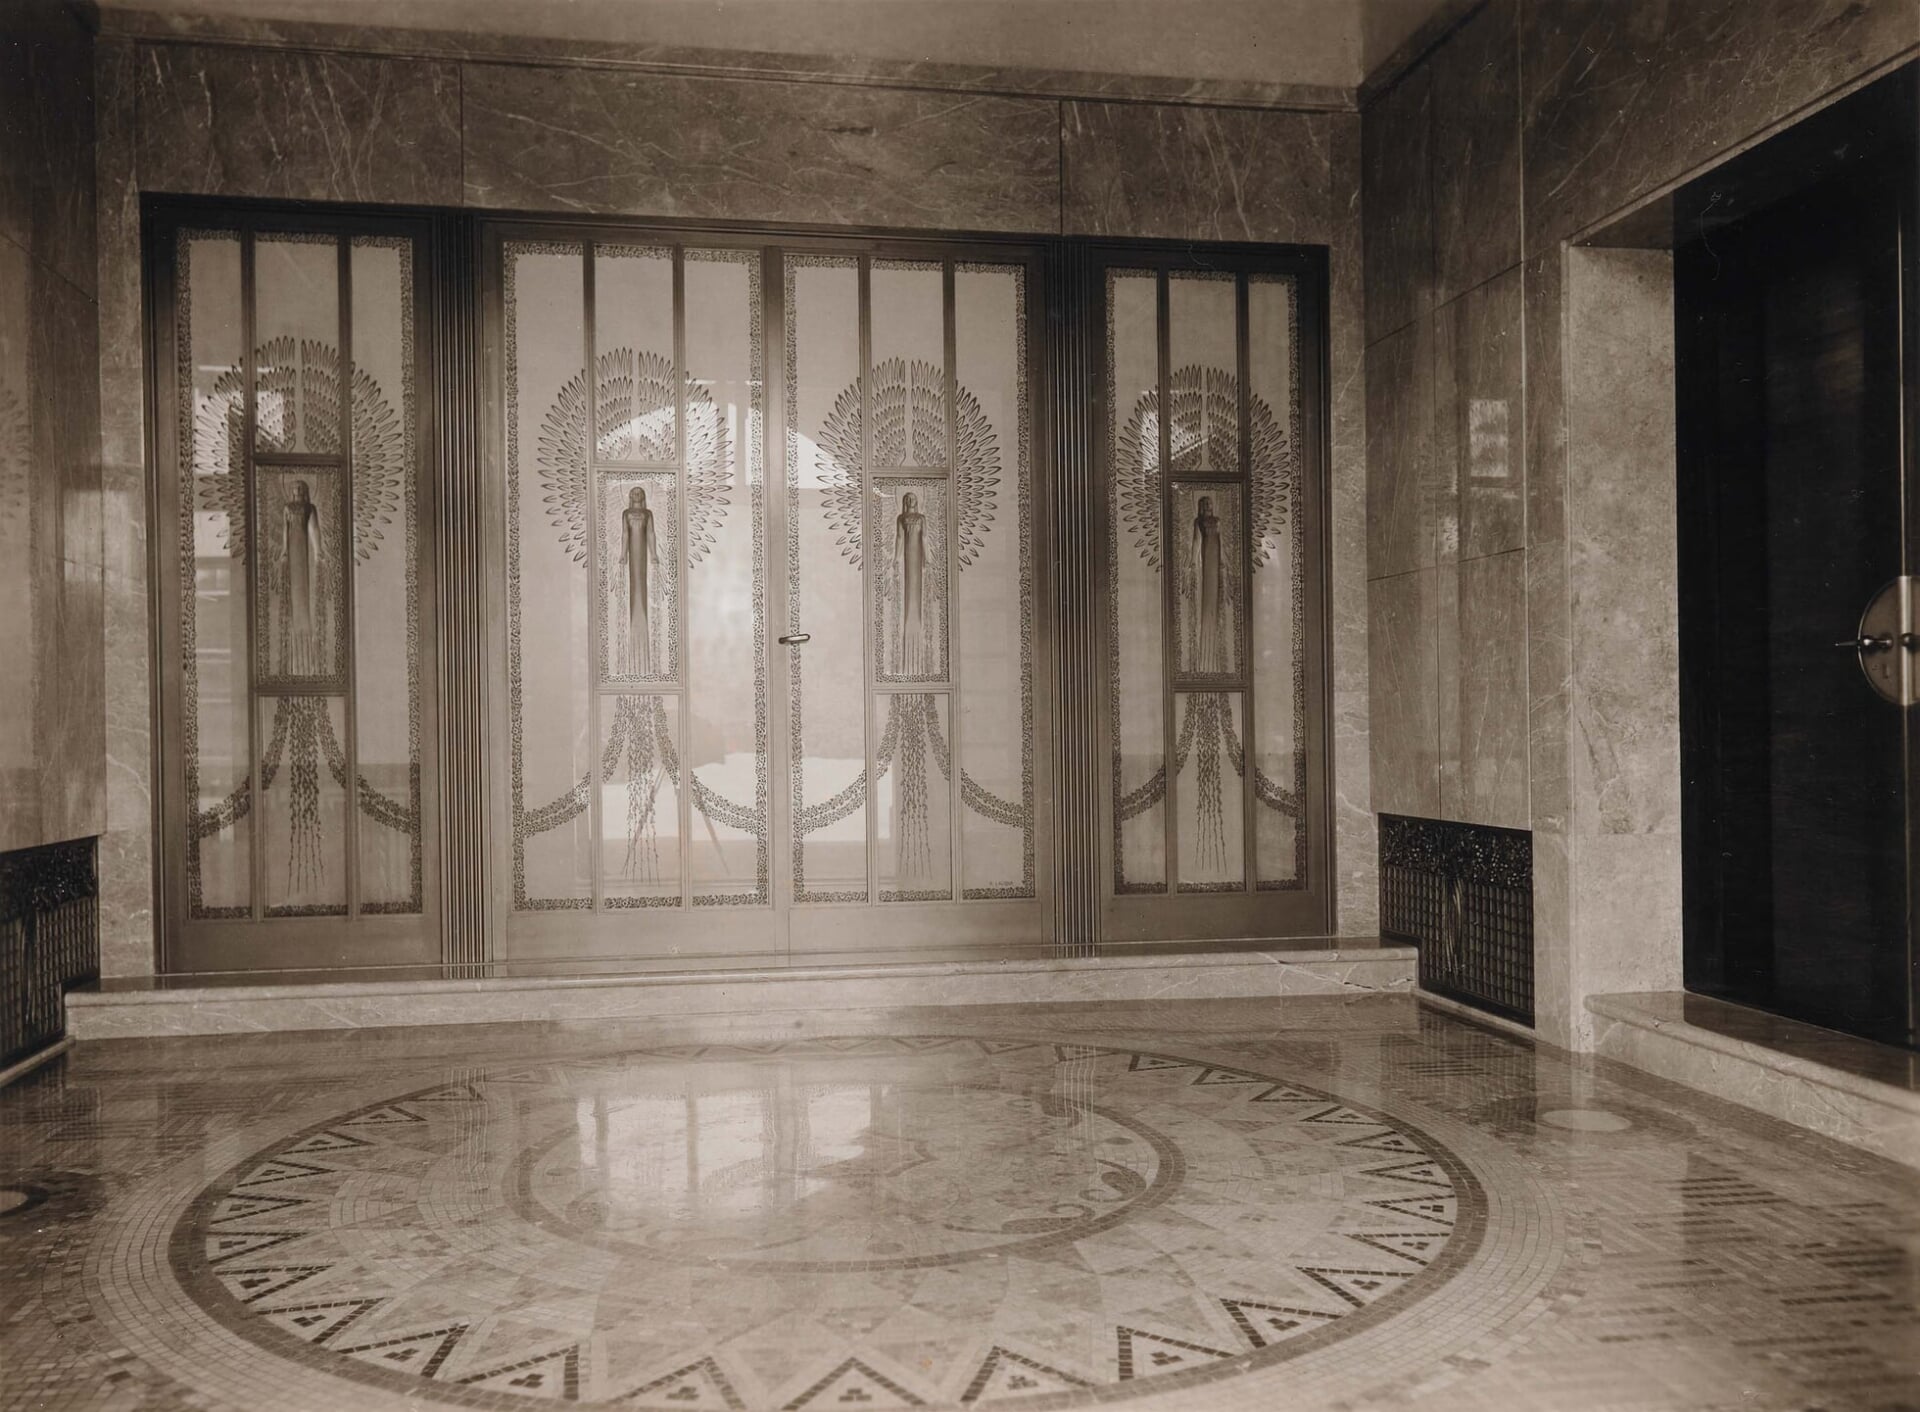 Entrance Hall, Residence of Prince Asaka, Matsui Photo Studio, 1933